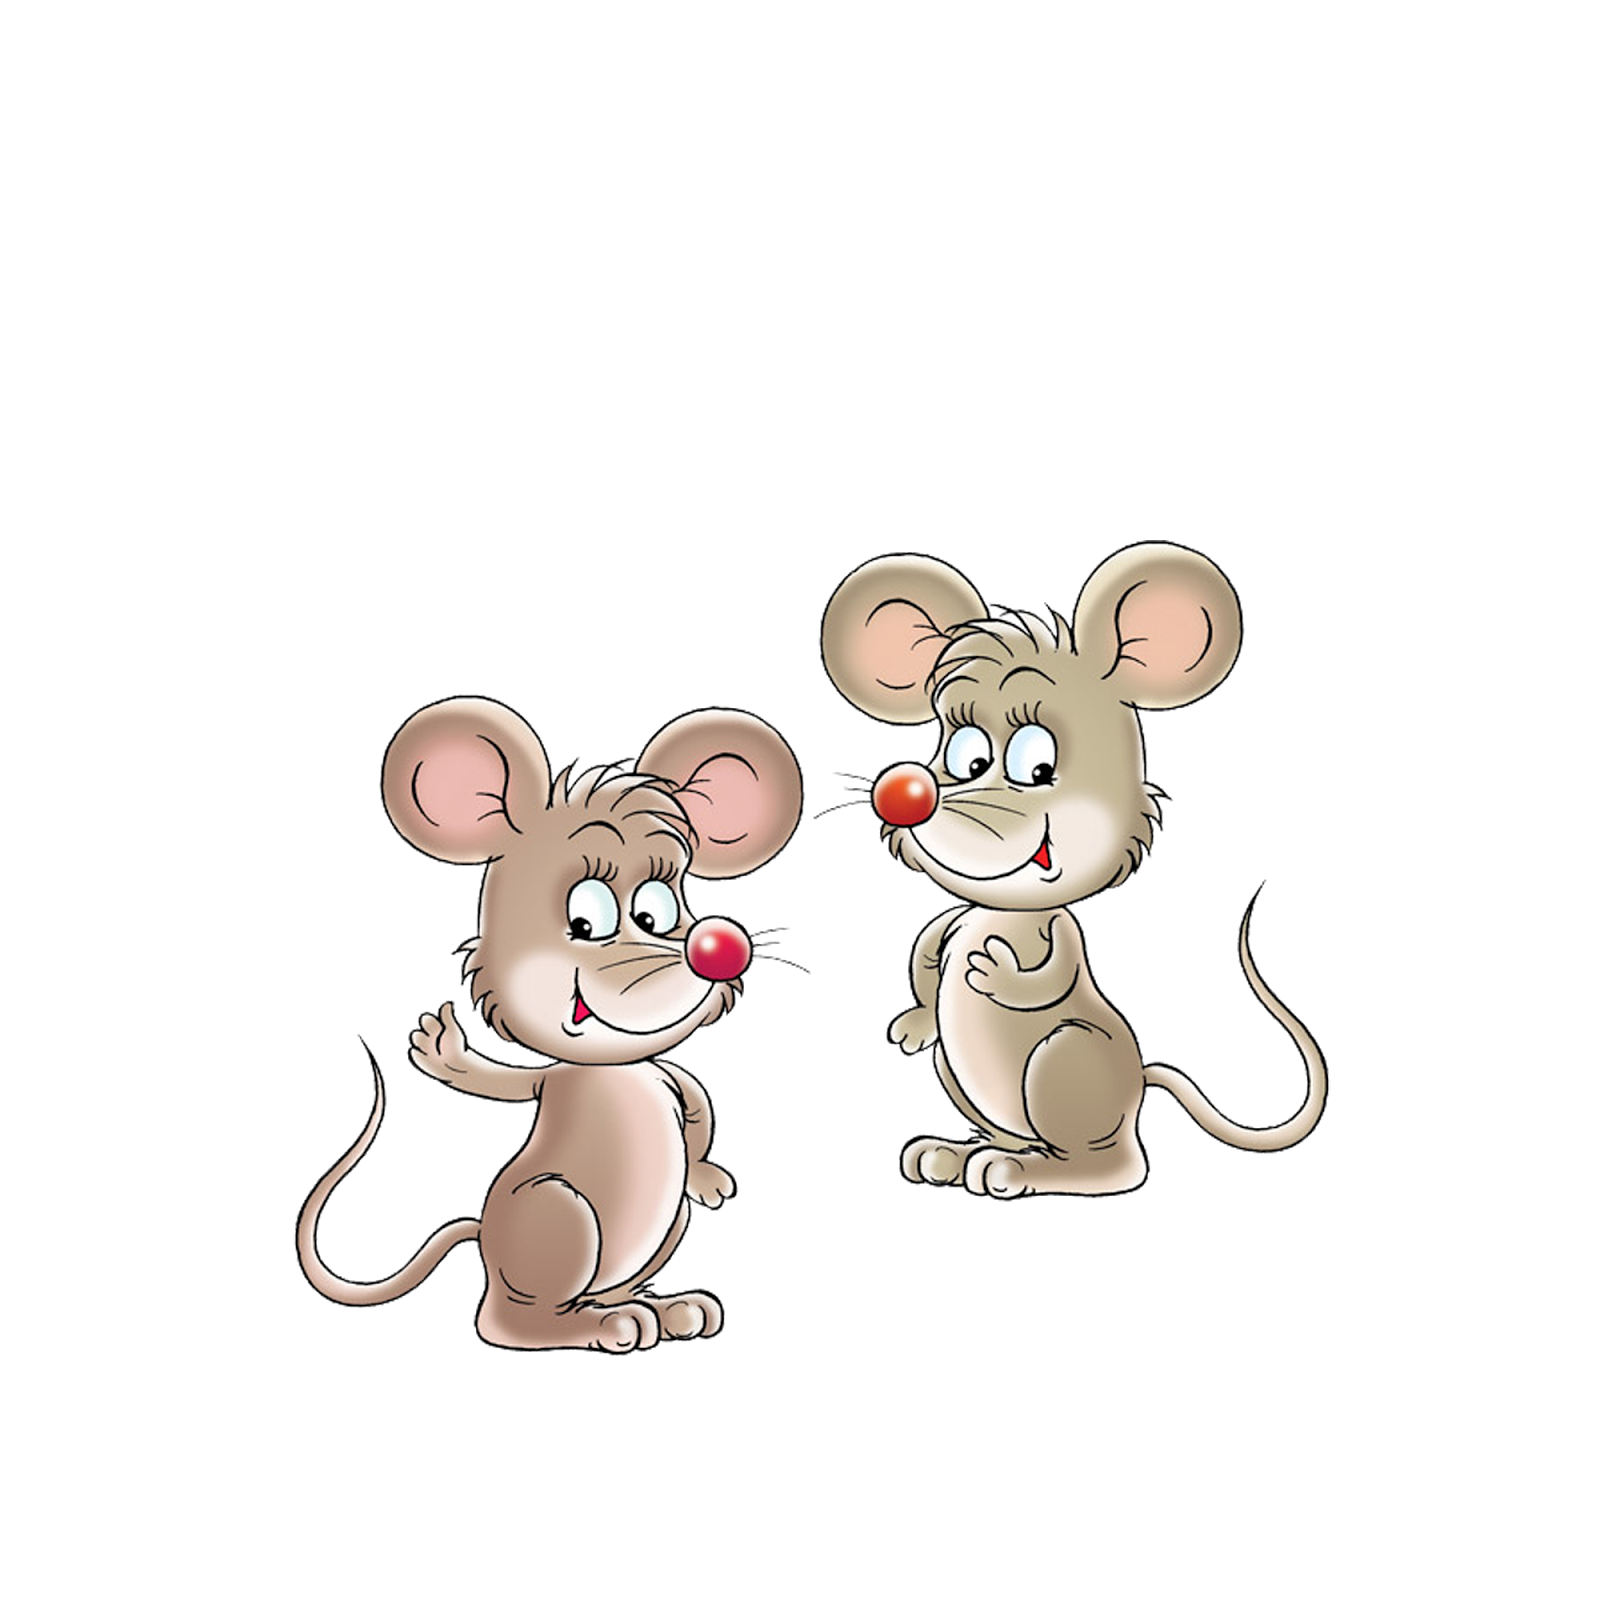 Включи 3 мышей. Мышка картинка для детей. Мышь мультяшная. Мультяшные мышки картинки. Три мышонка.